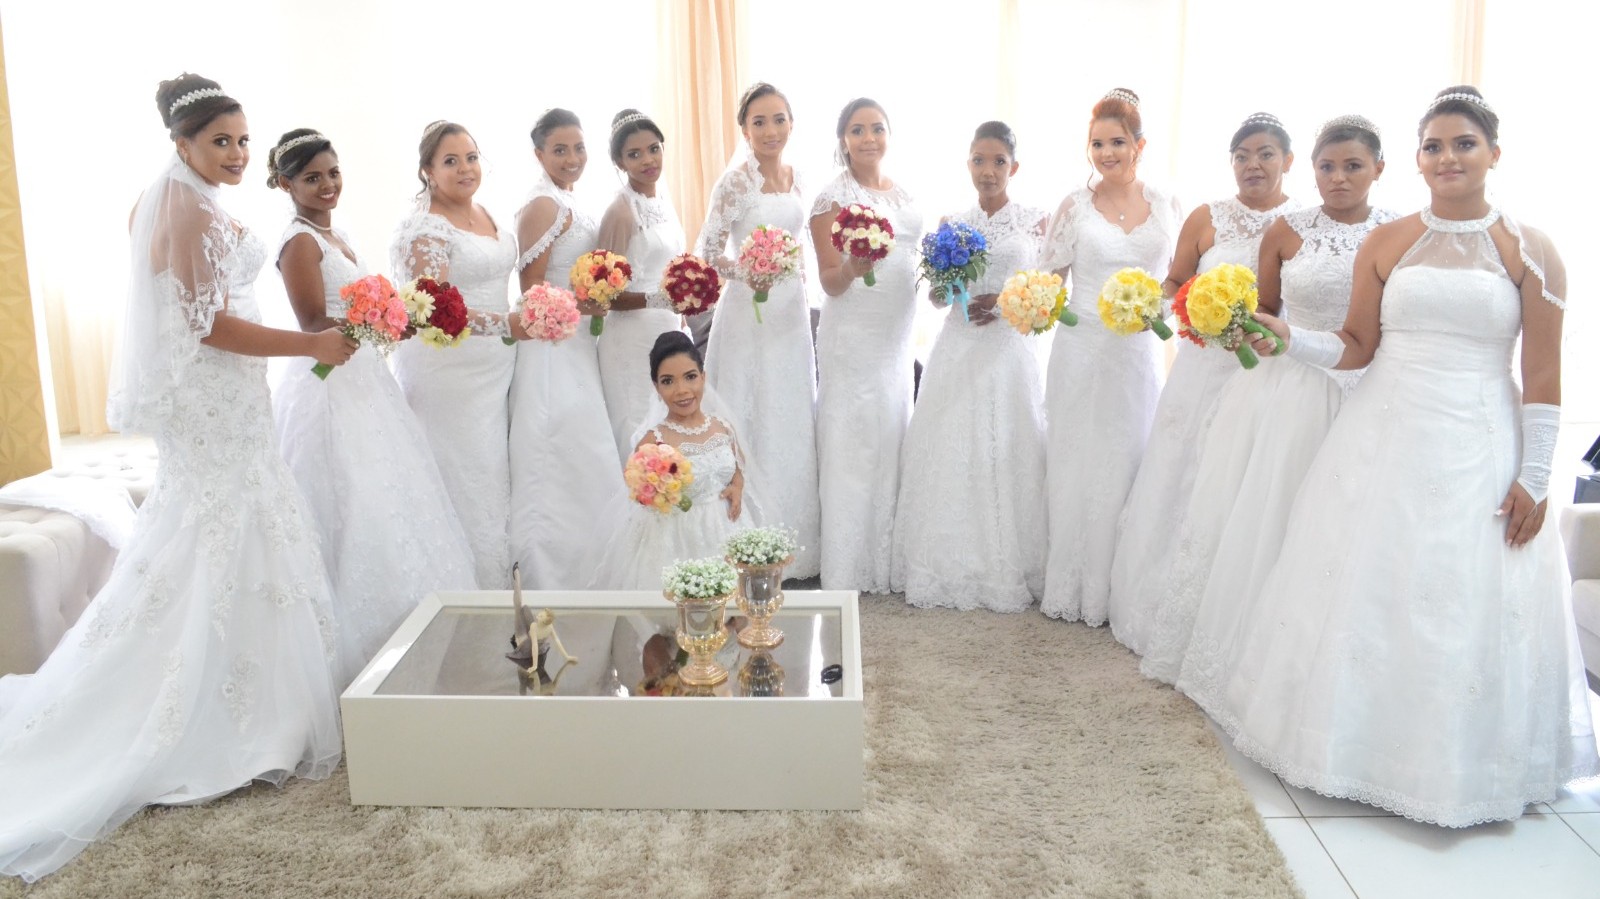 Tradição do casamento coletivo realiza sonho de mulheres que pediram matrimônio a Santo Antônio, em Barbalha, no Ceará